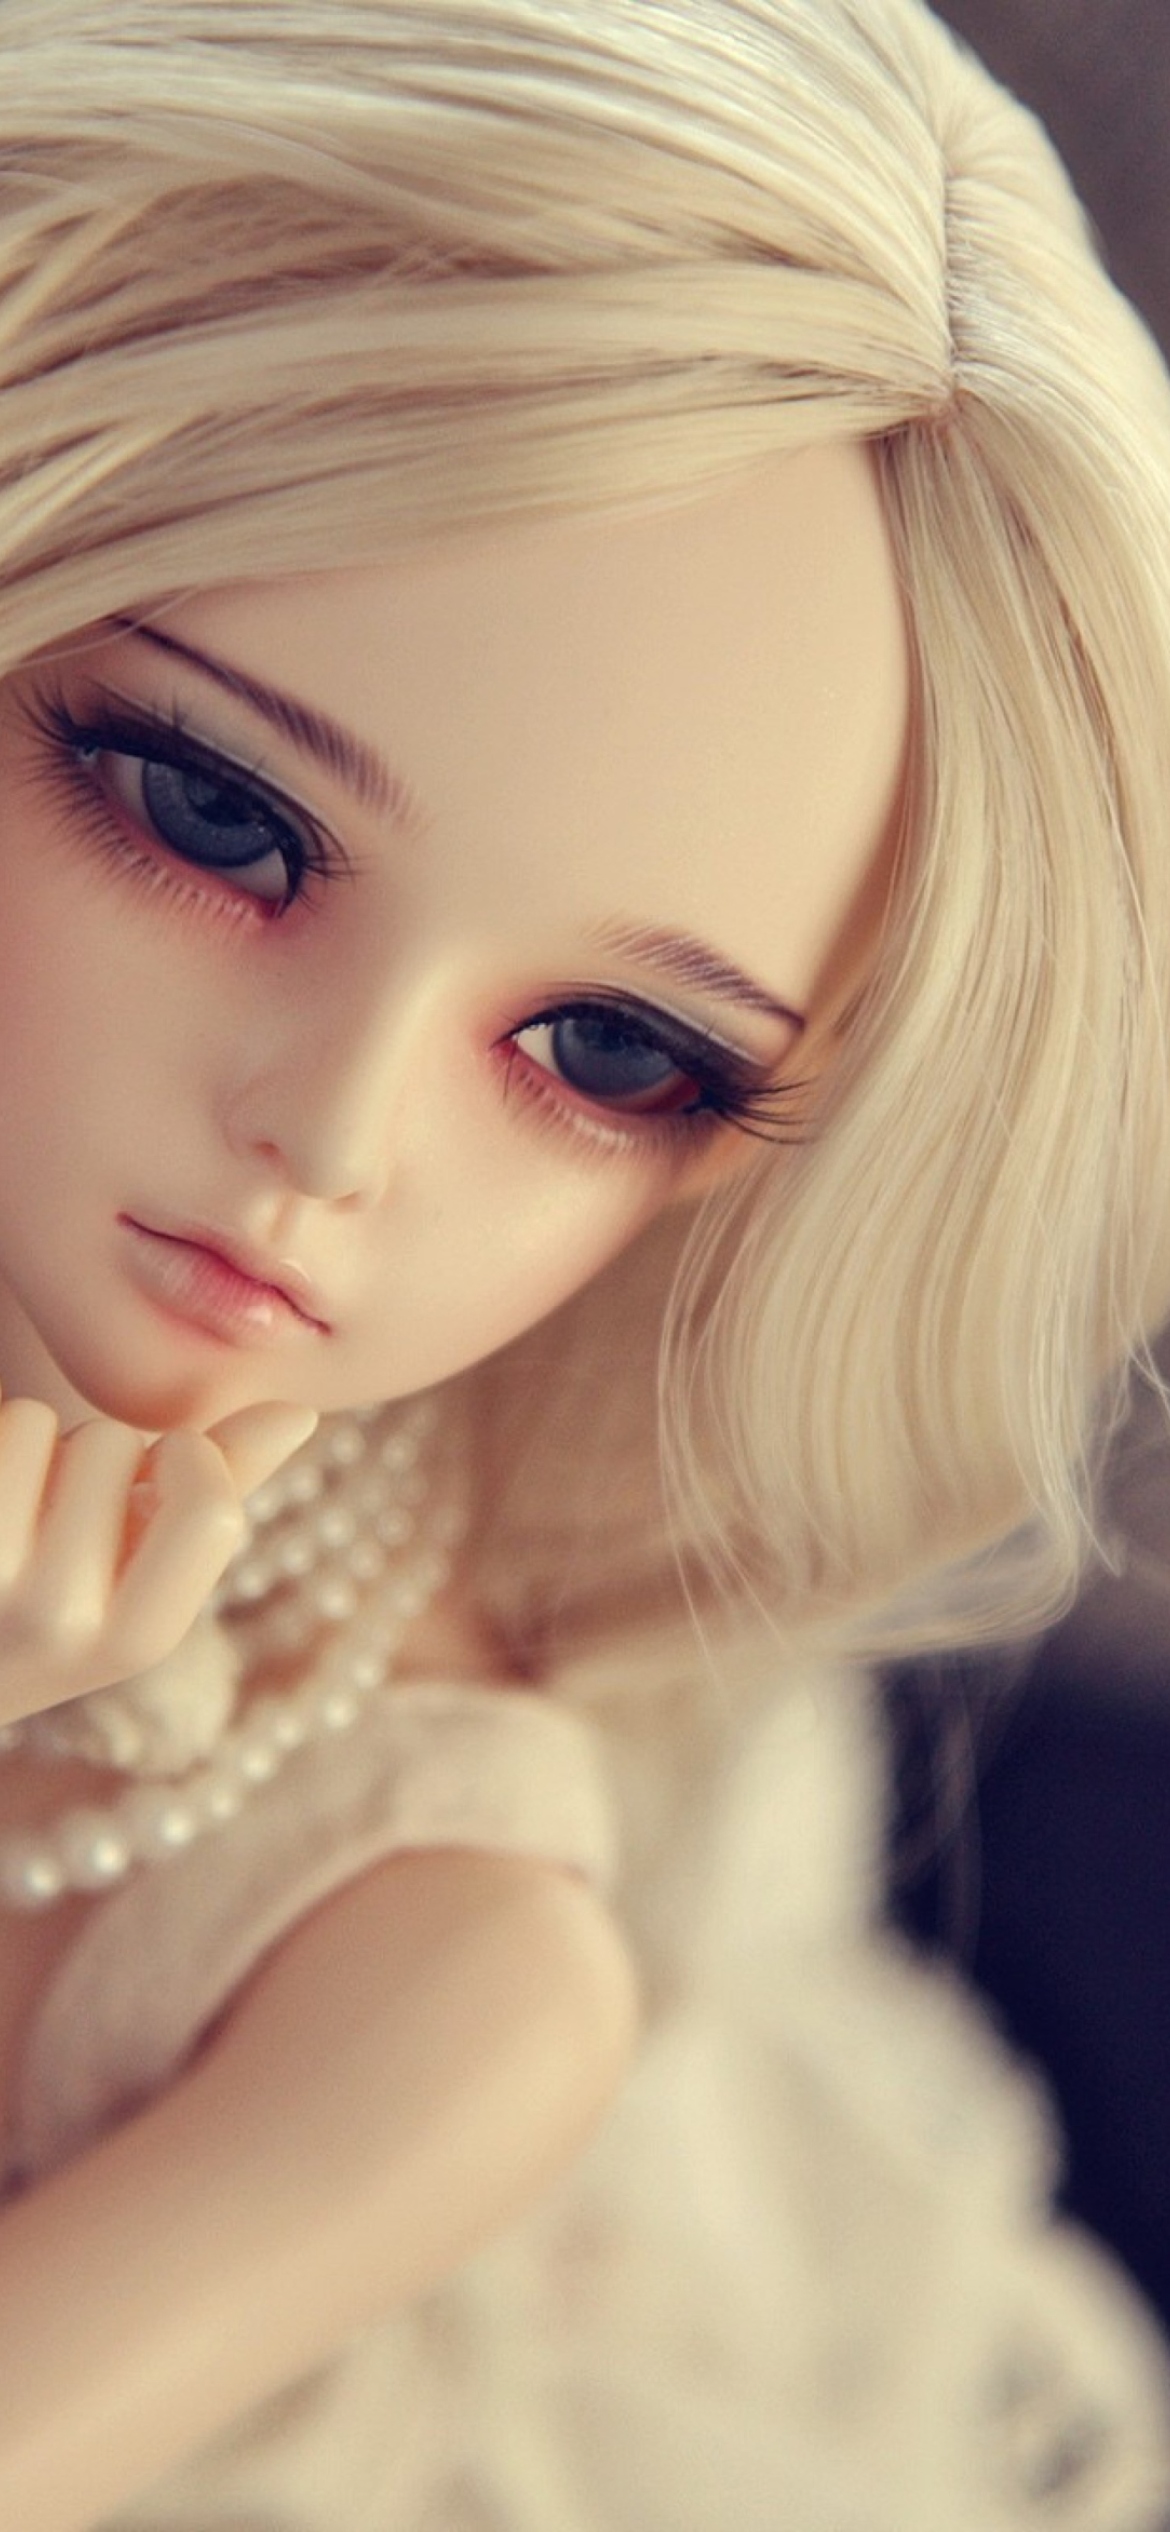 Blonde toys. Кукла блондин. Красивые куклы. Кукла блондинка с голубыми глазами. Кукла с красивыми глазами.